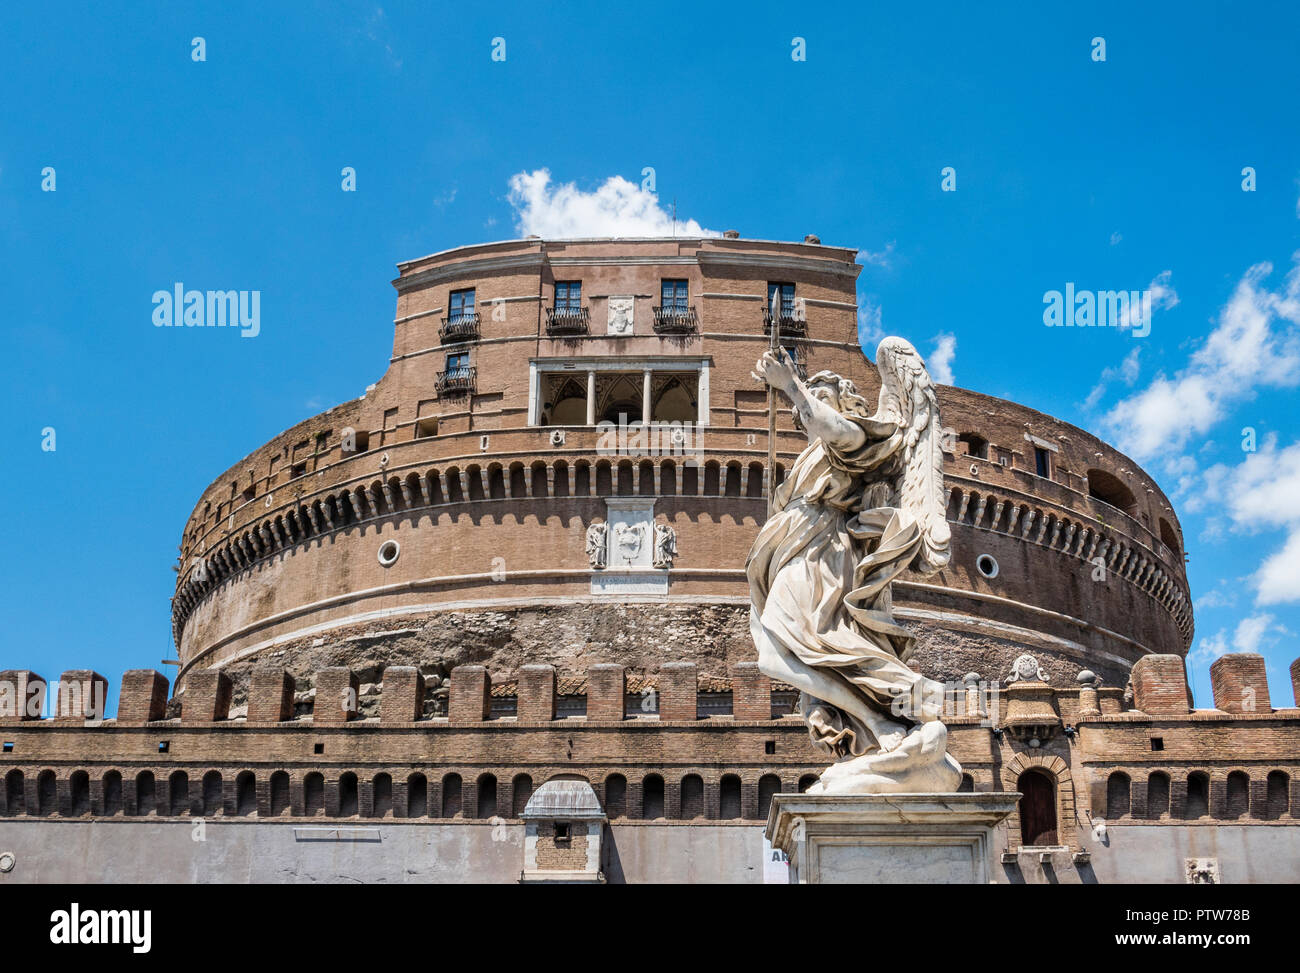 Vista de Castel Sant'Angelo con la estatua de ángel con la lanza, por el escultor barroco italiano del siglo XVII Domenico Guidi, Roma, Italia Foto de stock